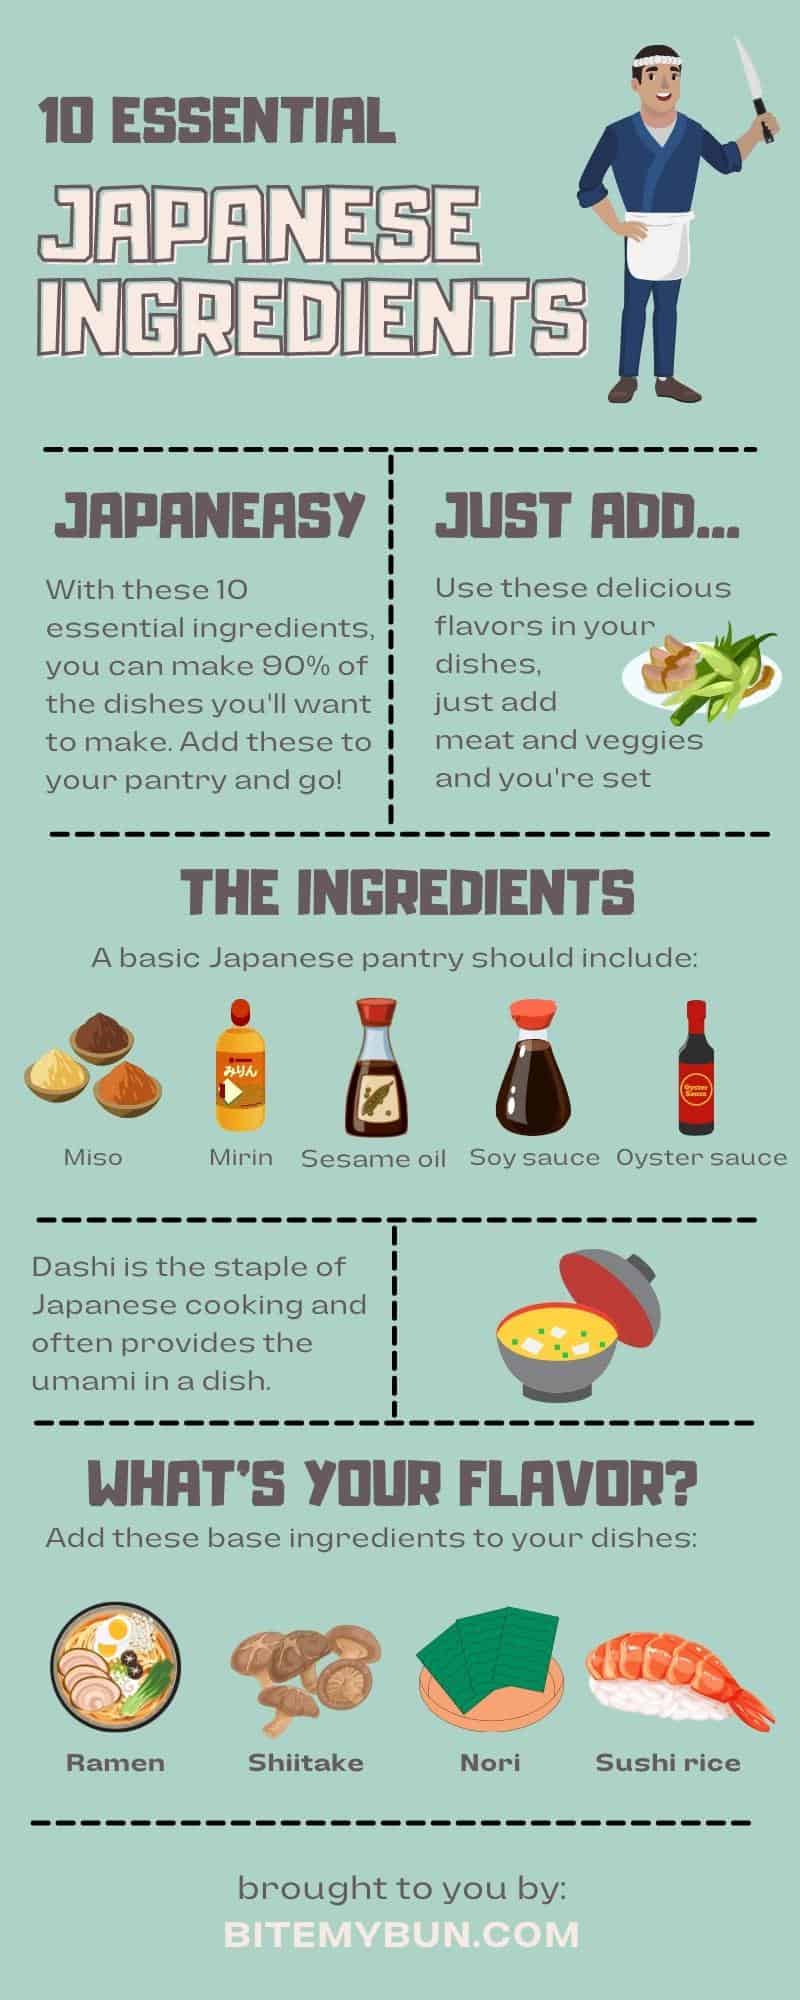 10 ingredientes japoneses essenciais